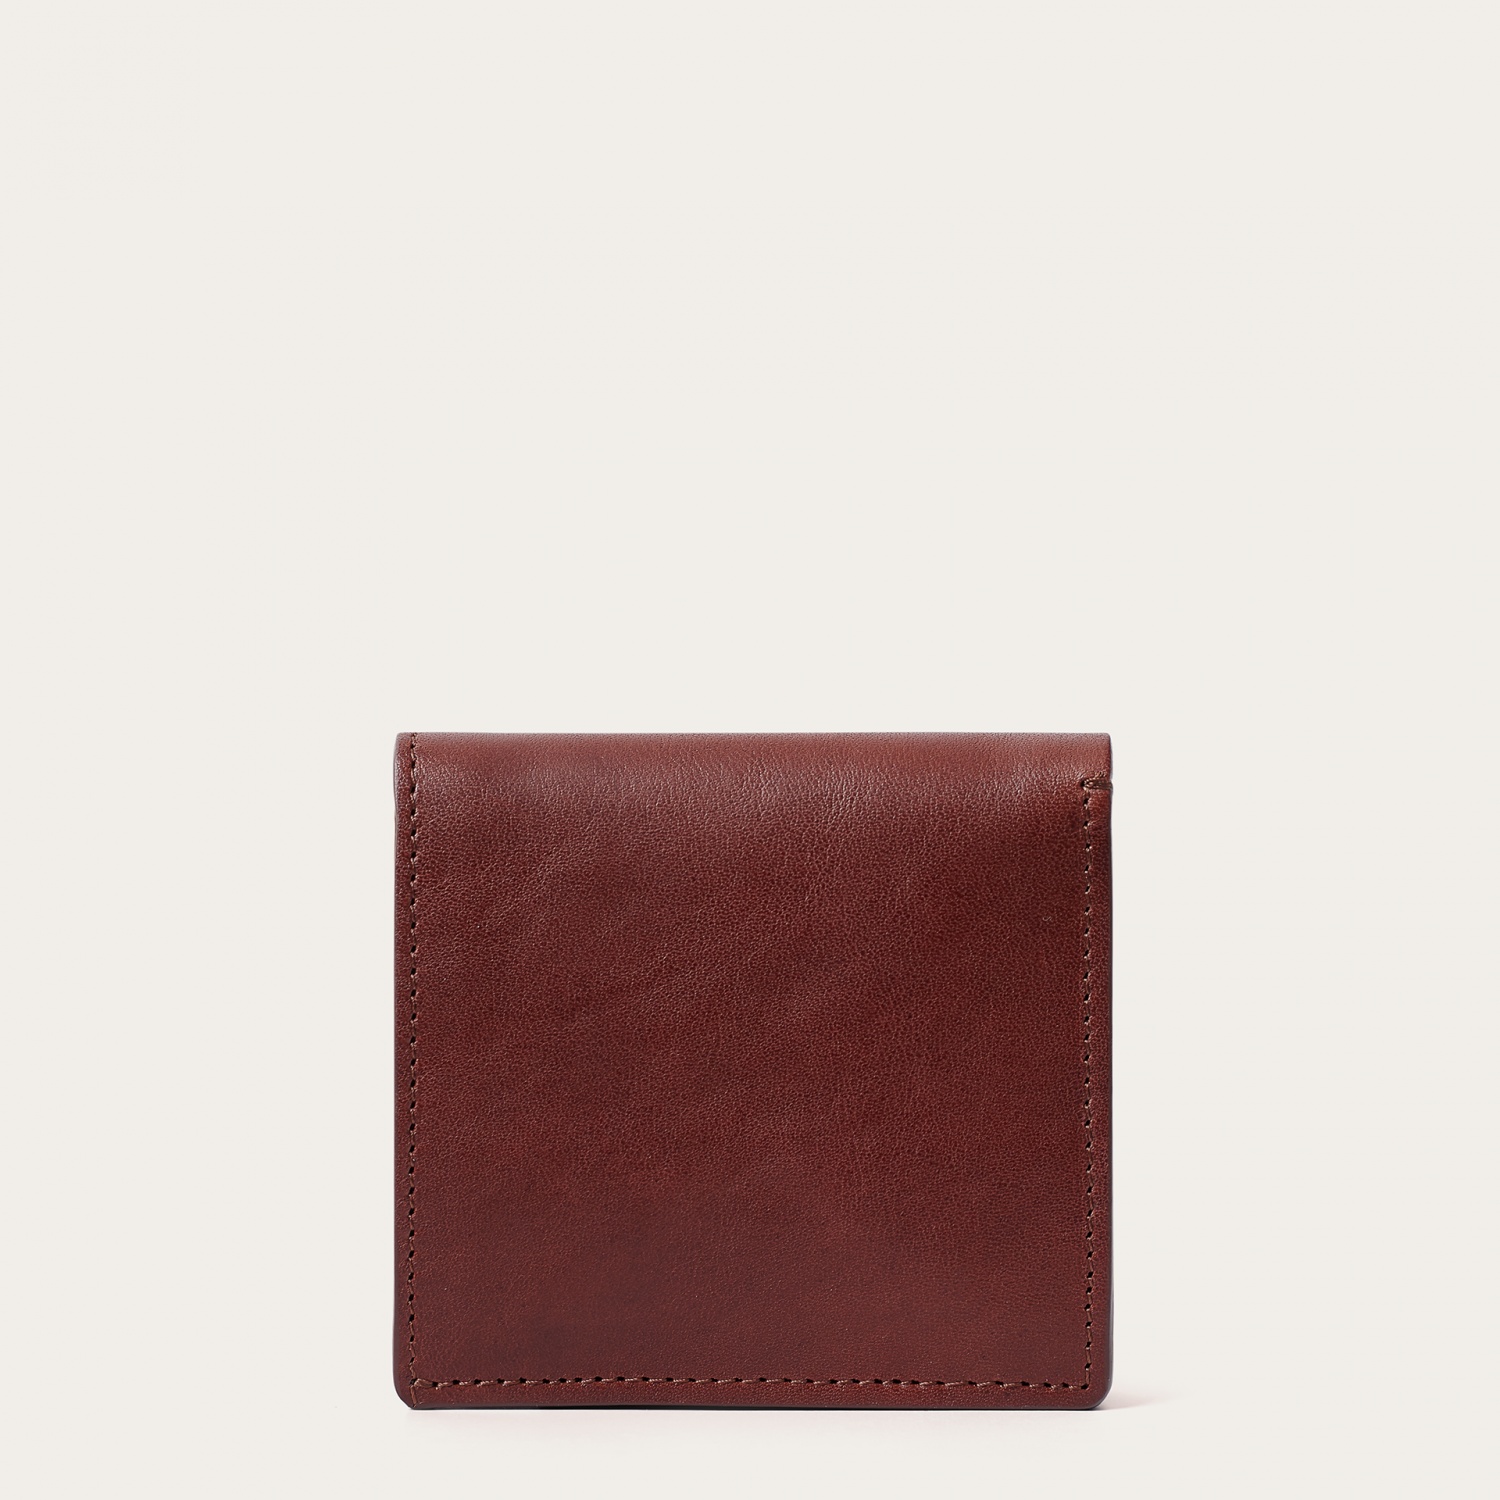  Adon wallet, brown-5 